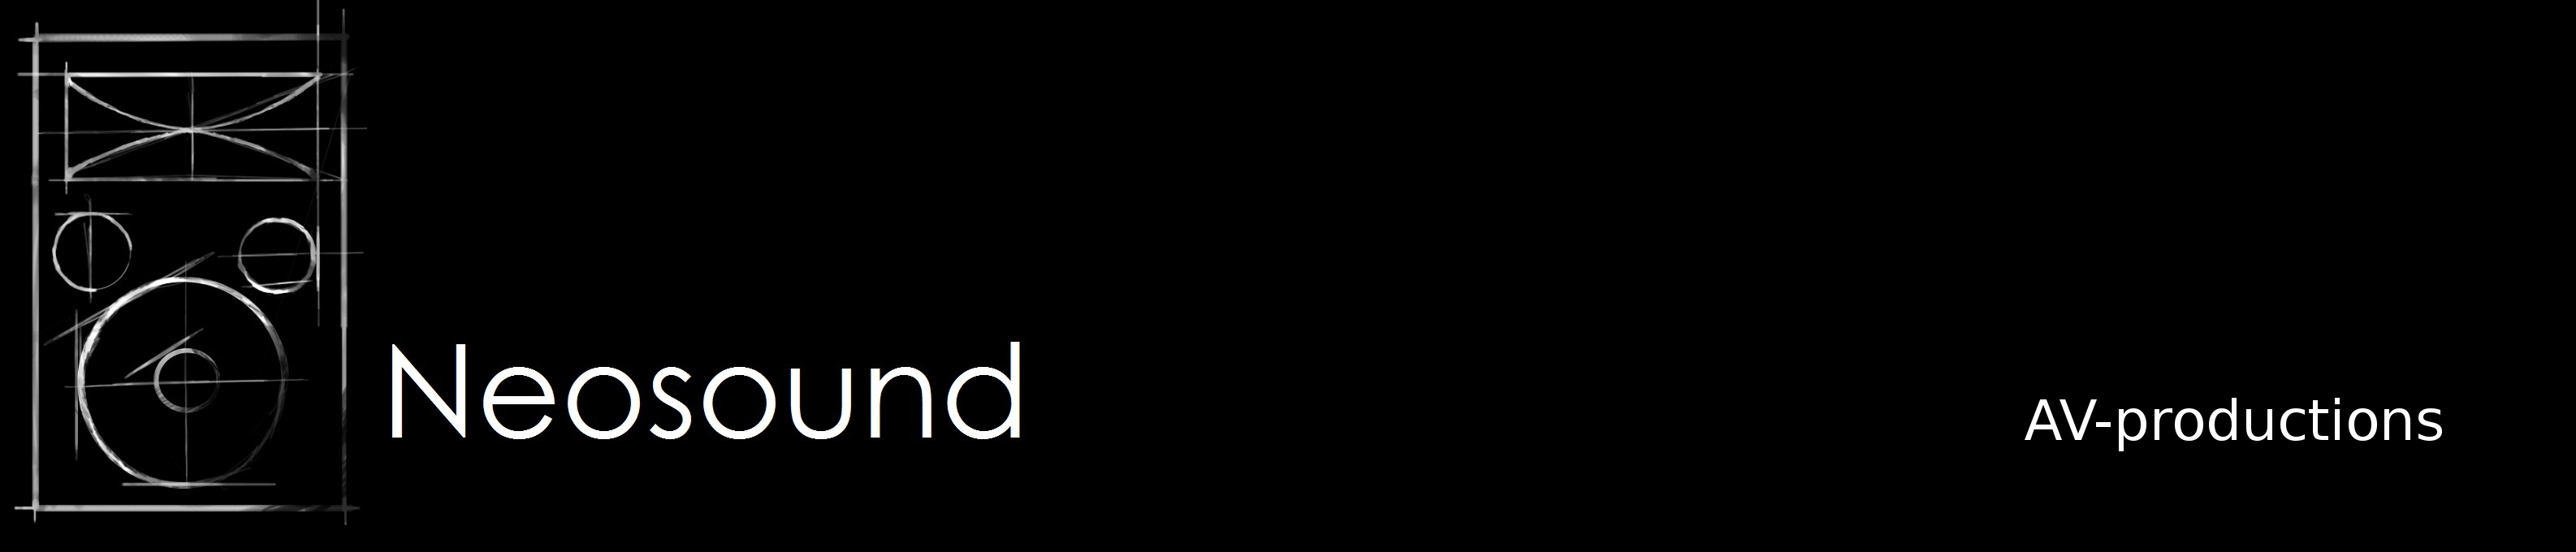 Neosound logo